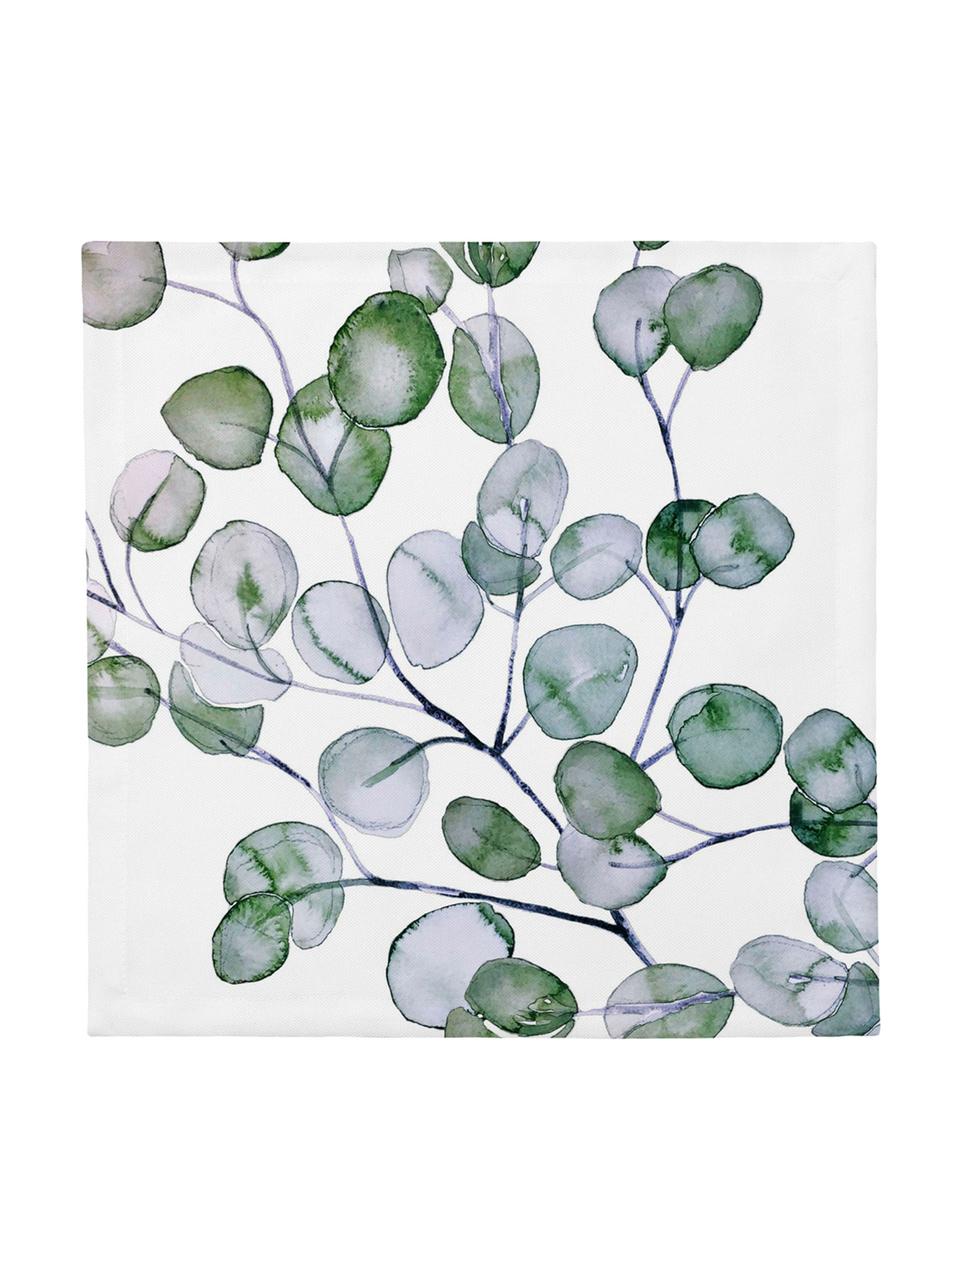 Serwetka z tkaniny Eucalyptus, 4 szt., Bawełna, Biały, zielony, szary, S 40 x D 40 cm